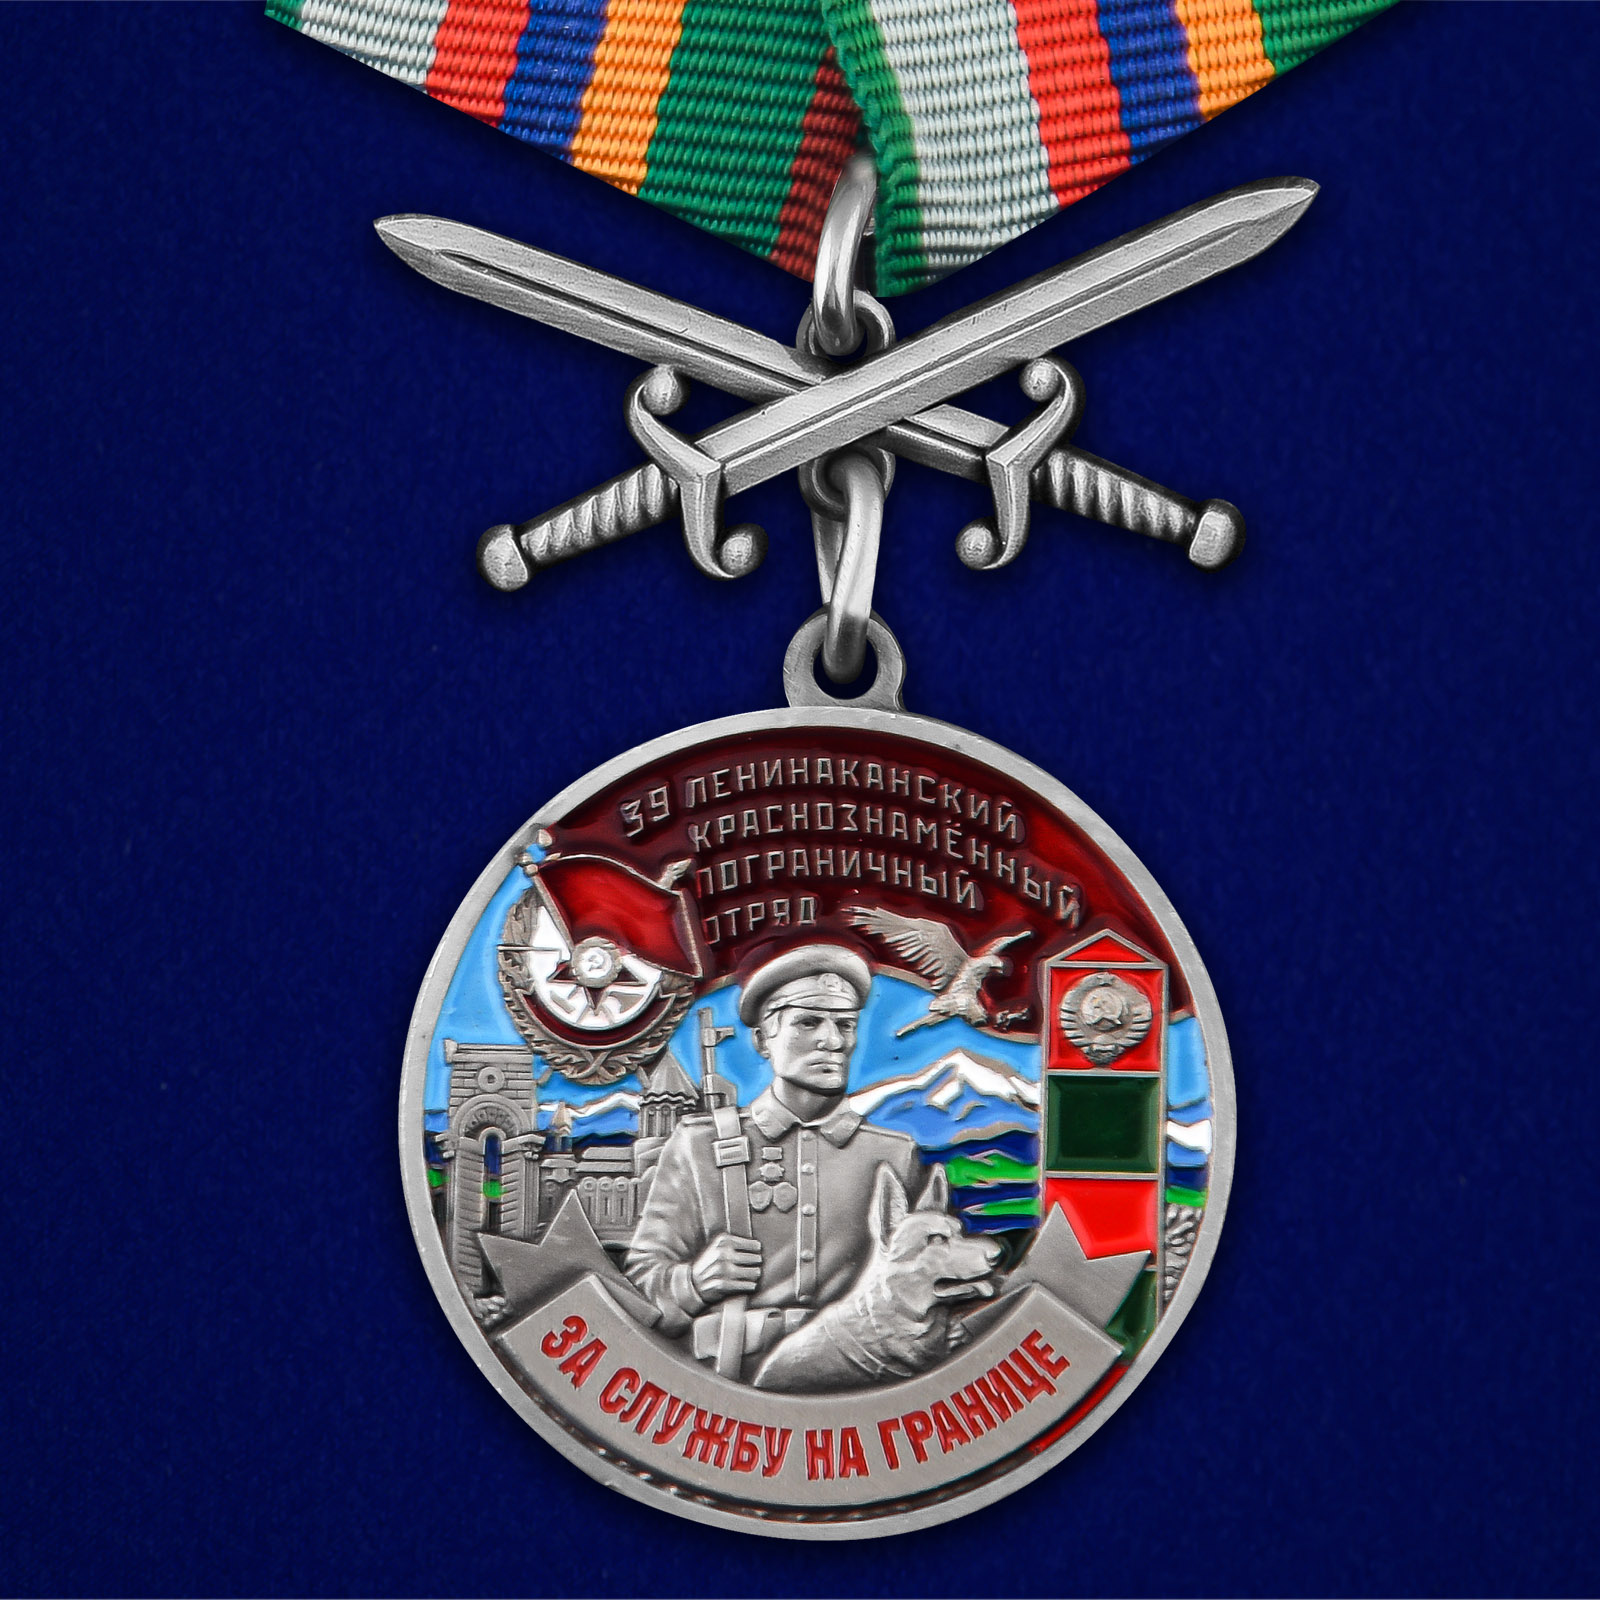 Купить медаль За службу в Ленинаканском пограничном отряде с мечами выгодно